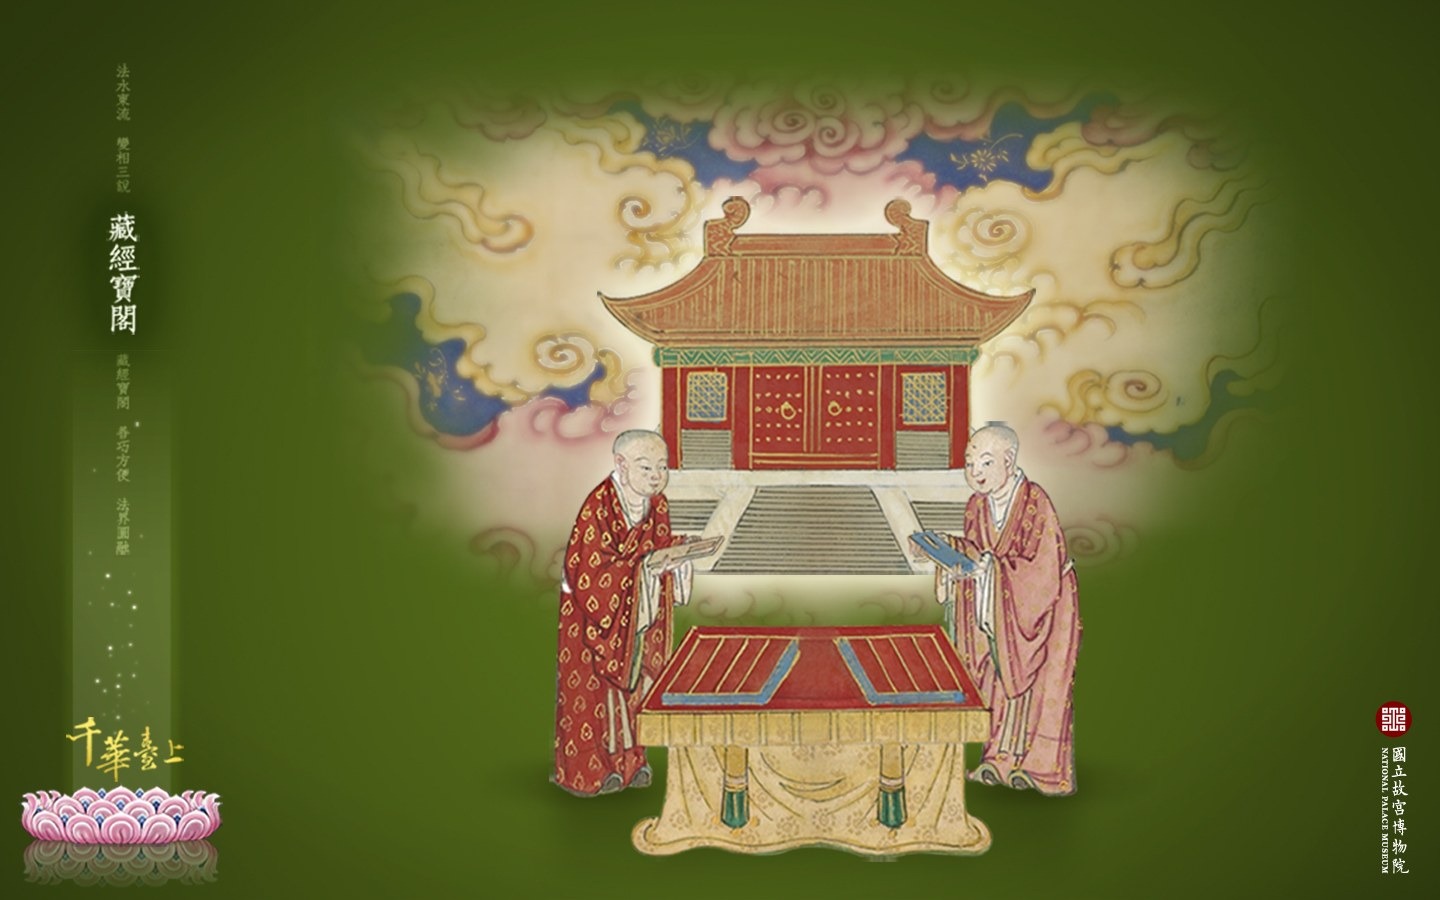 台北故宫博物院 文物展壁纸(三)11 - 1440x900